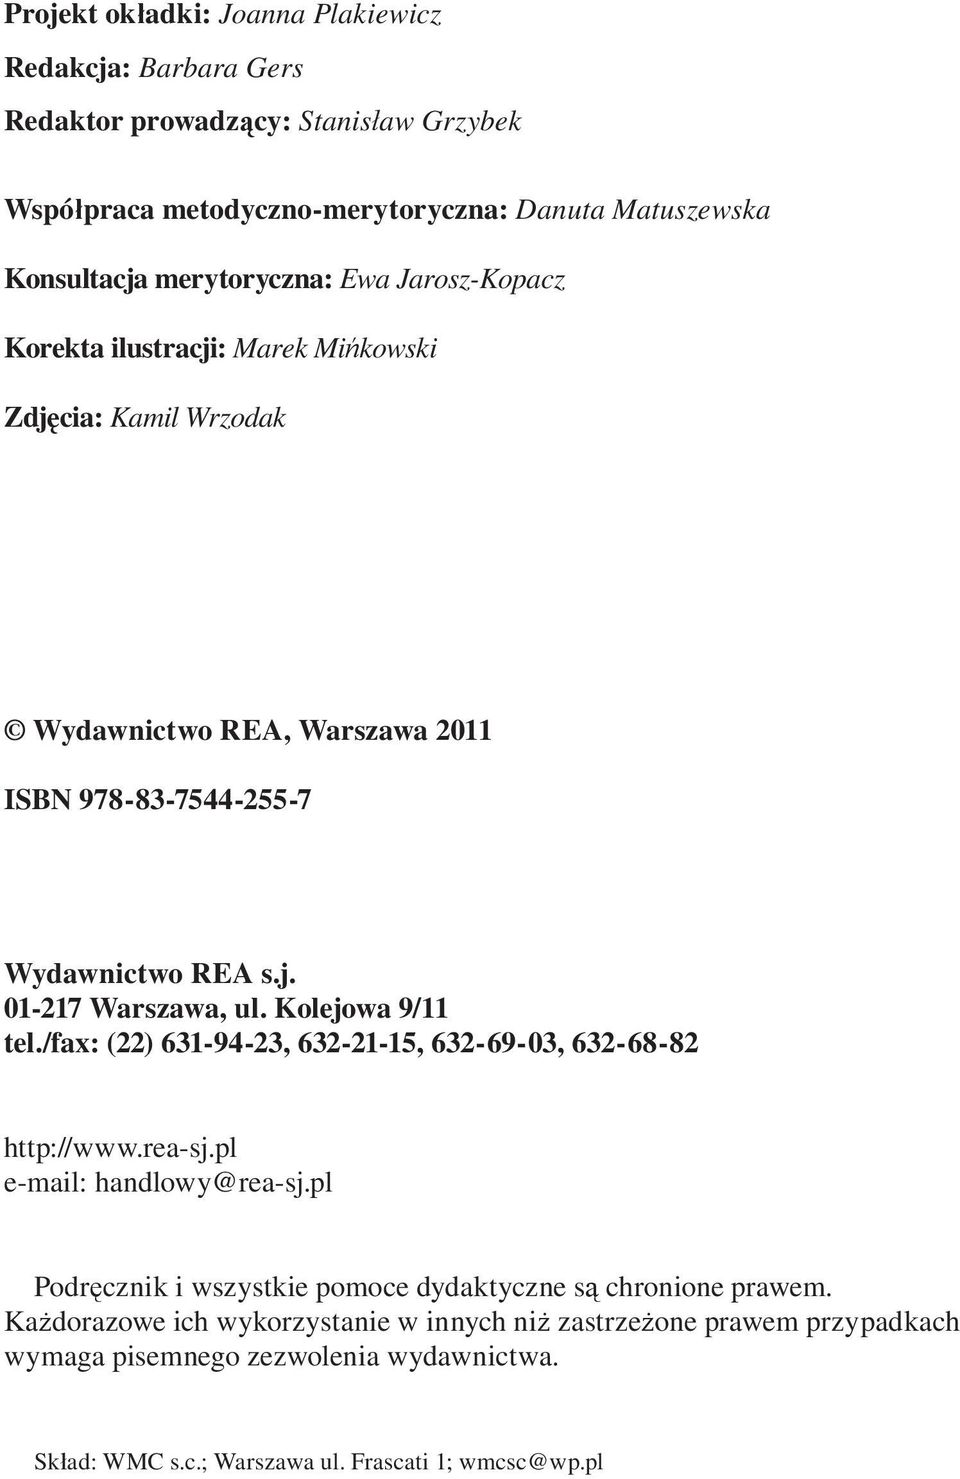 Kolejowa 9/11 tel./fax: (22) 631-94-23, 632-21-15, 632-69-03, 632-68-82 http://www.rea-sj.pl e-mail: handlowy@rea-sj.